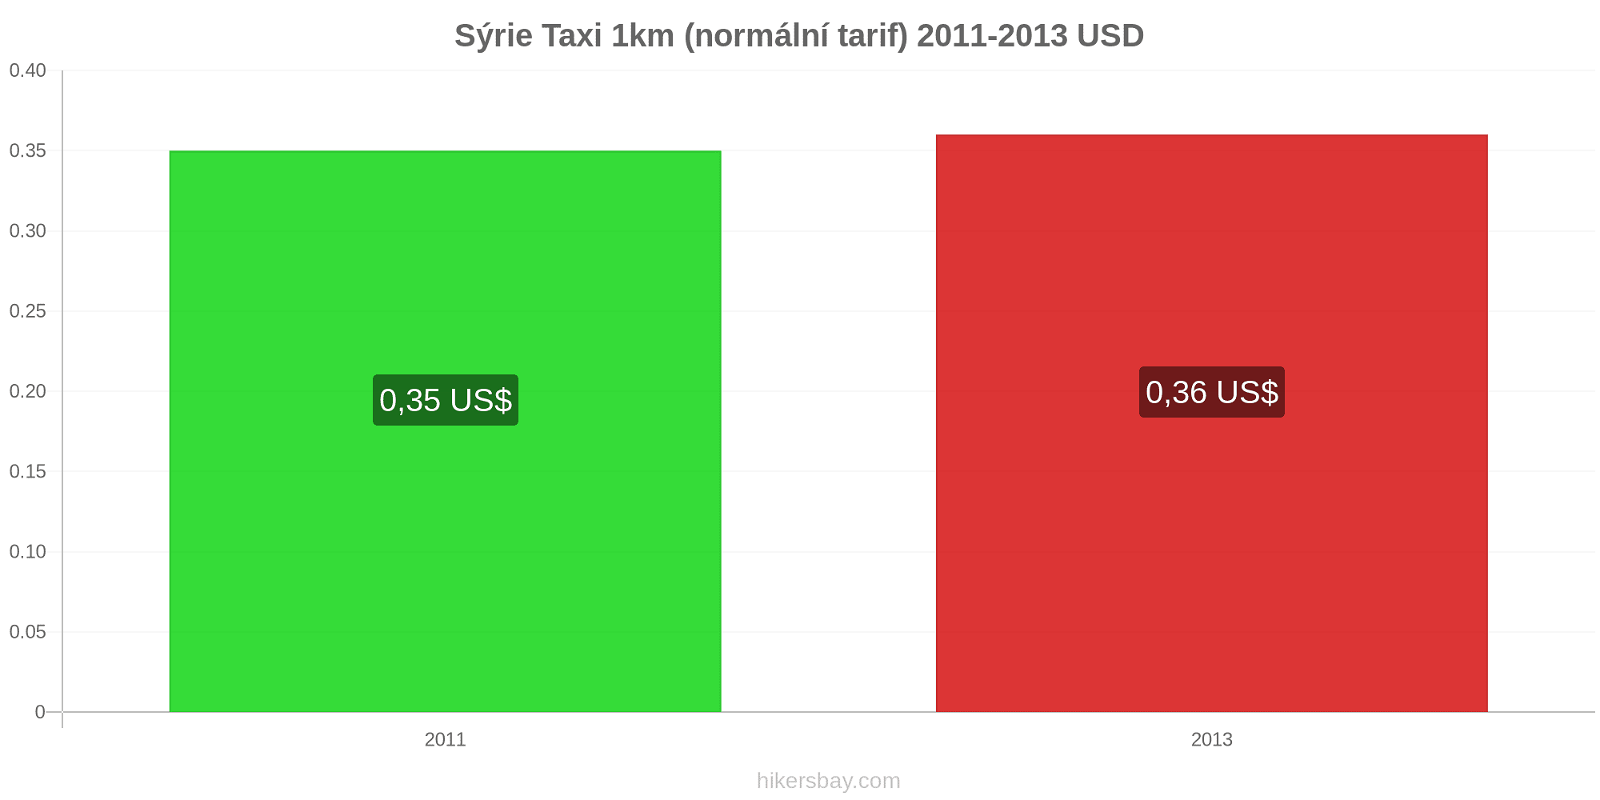 Sýrie změny cen Taxi 1km (normální tarif) hikersbay.com